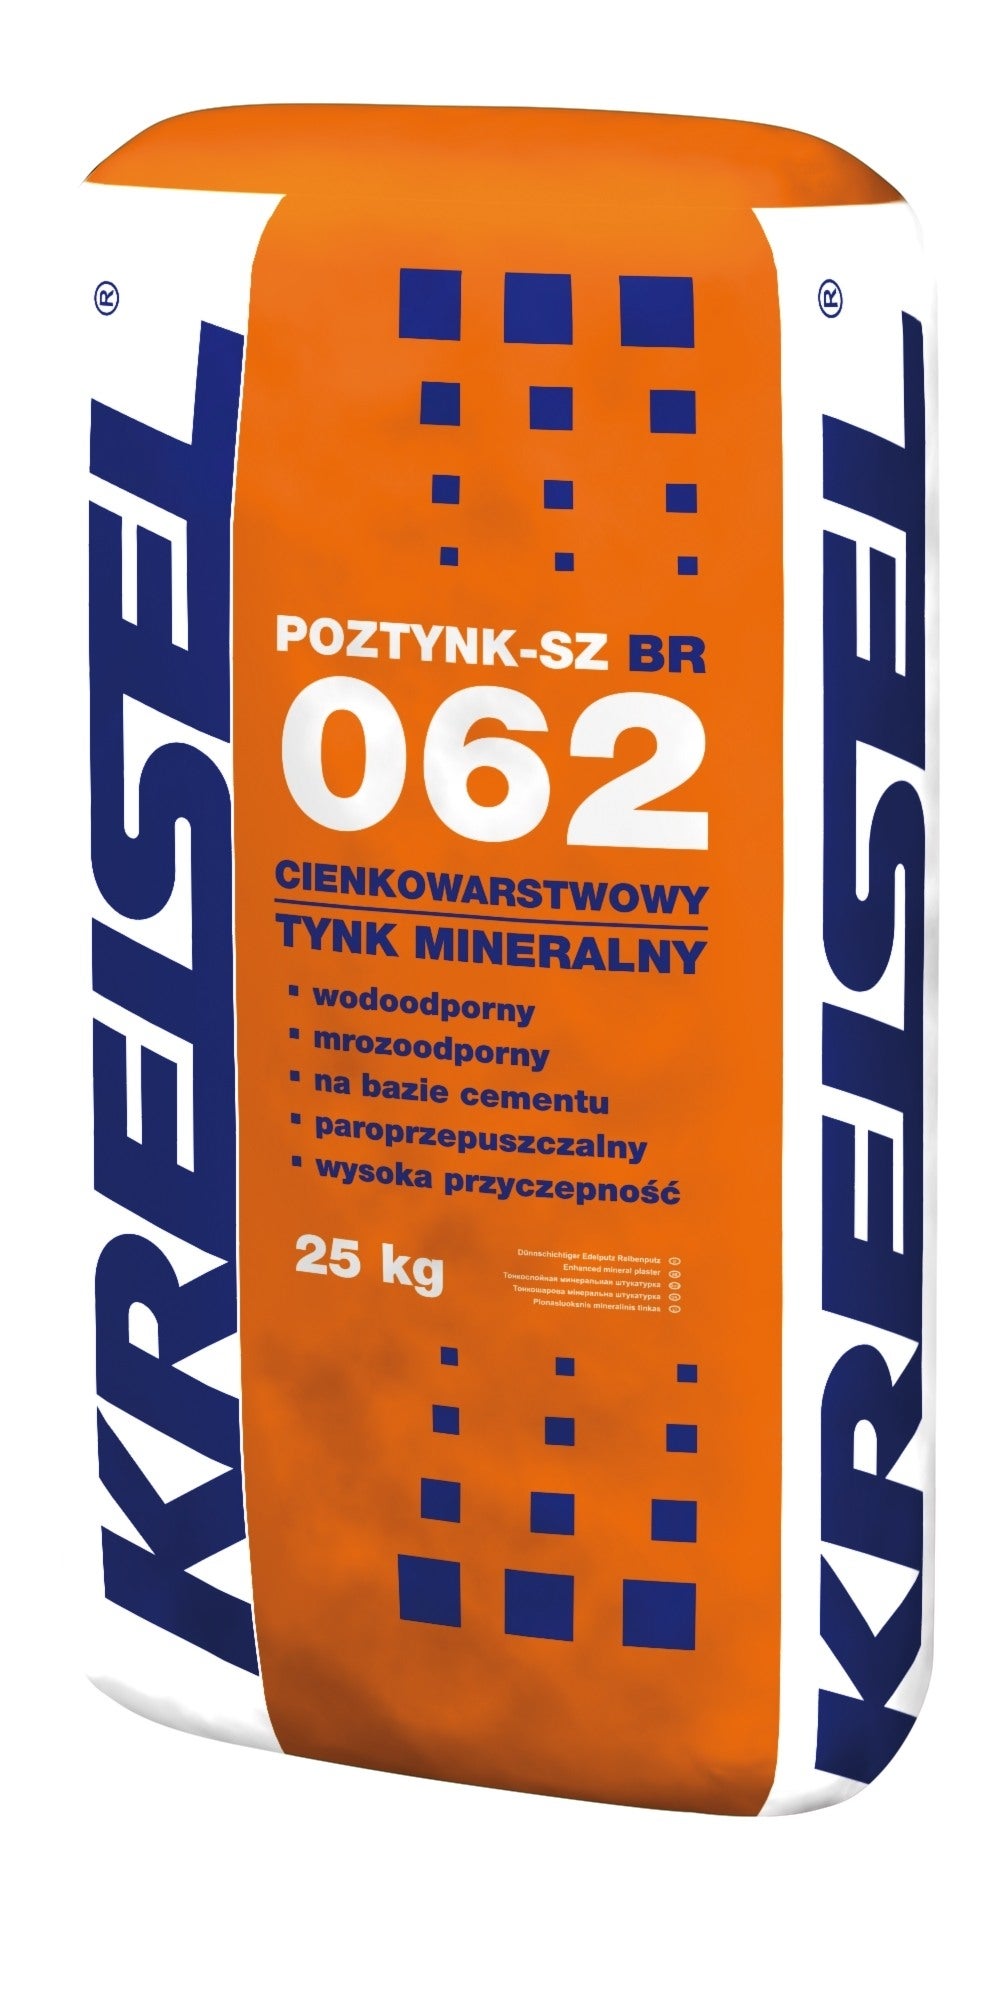 Фото - Штукатурка Tynk mineralny Kreisel Poztynk-SZ BR 062 25 kg, baranek 2 mm, biały